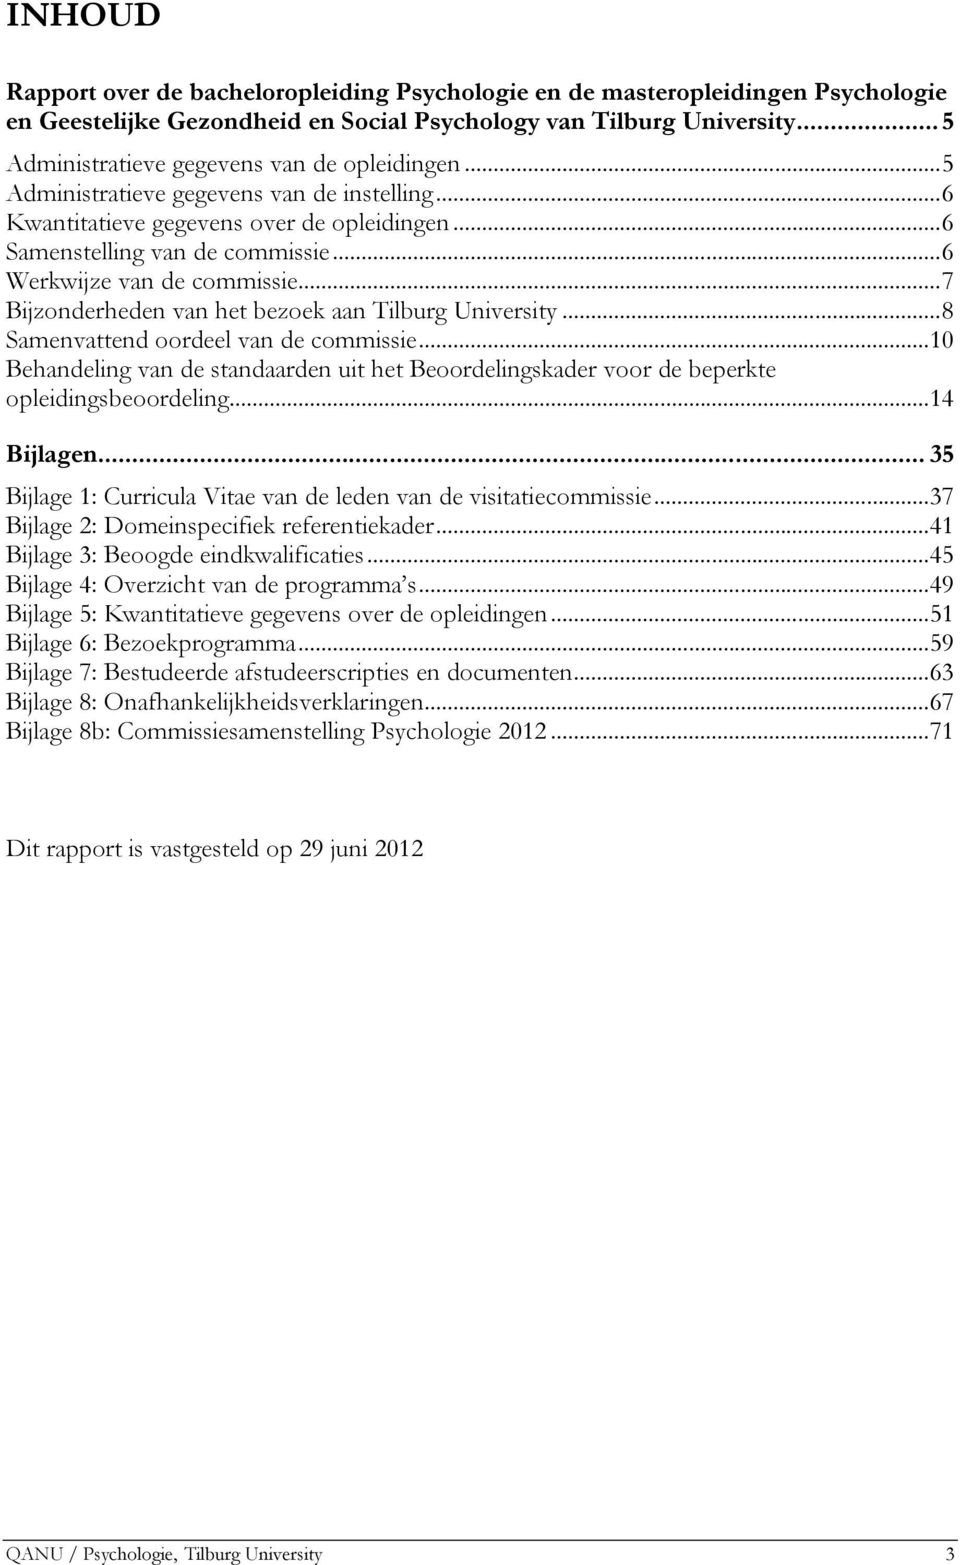 ..6 Werkwijze van de commissie...7 Bijzonderheden van het bezoek aan Tilburg University...8 Samenvattend oordeel van de commissie.